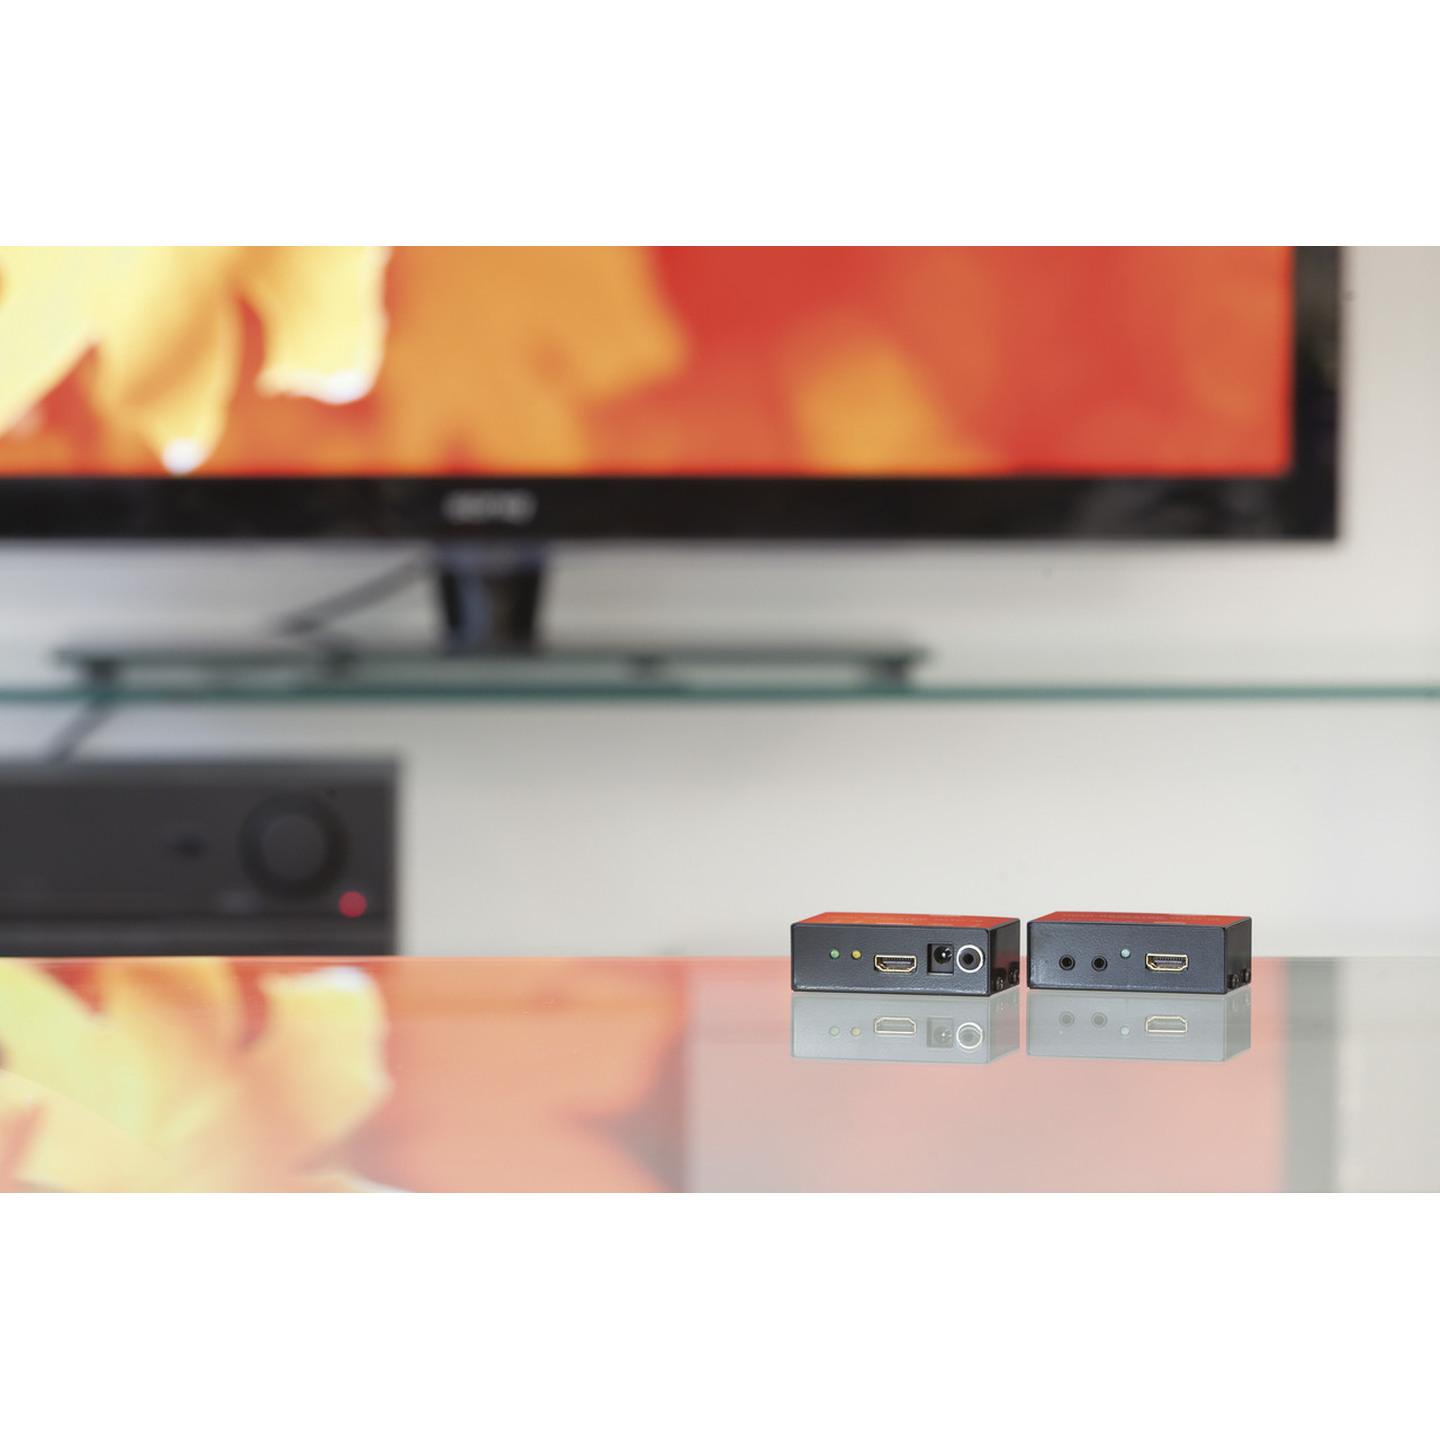 REPEATER HDMI W/IR EXTENDER 240V PSU